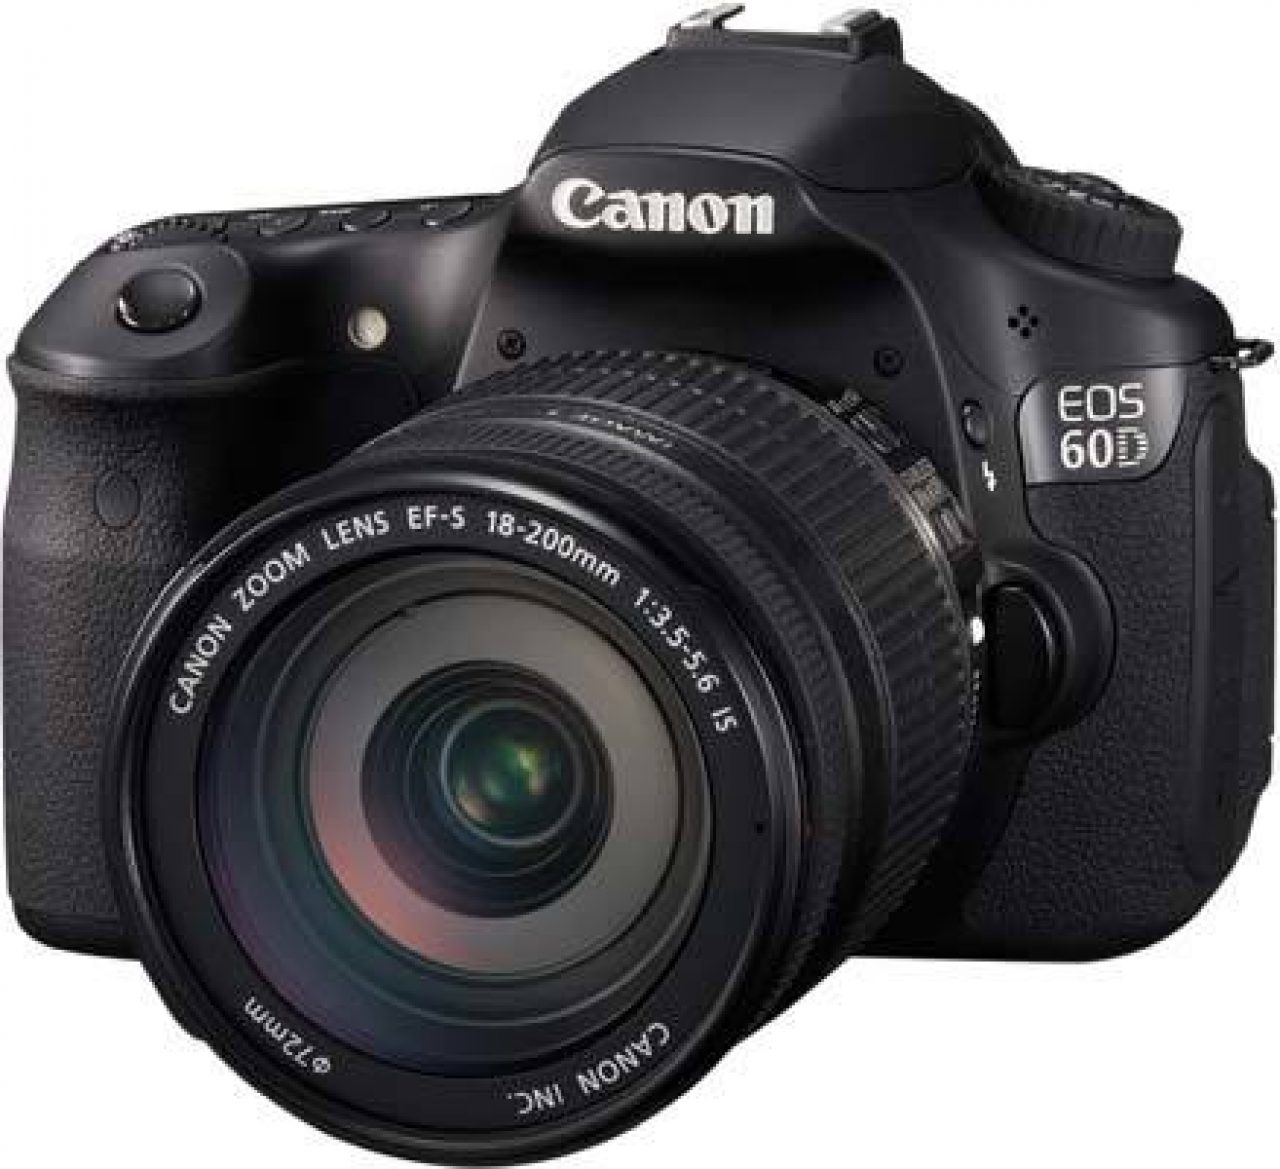 zijde Bespreken toediening Canon EOS 60D Review | Photography Blog